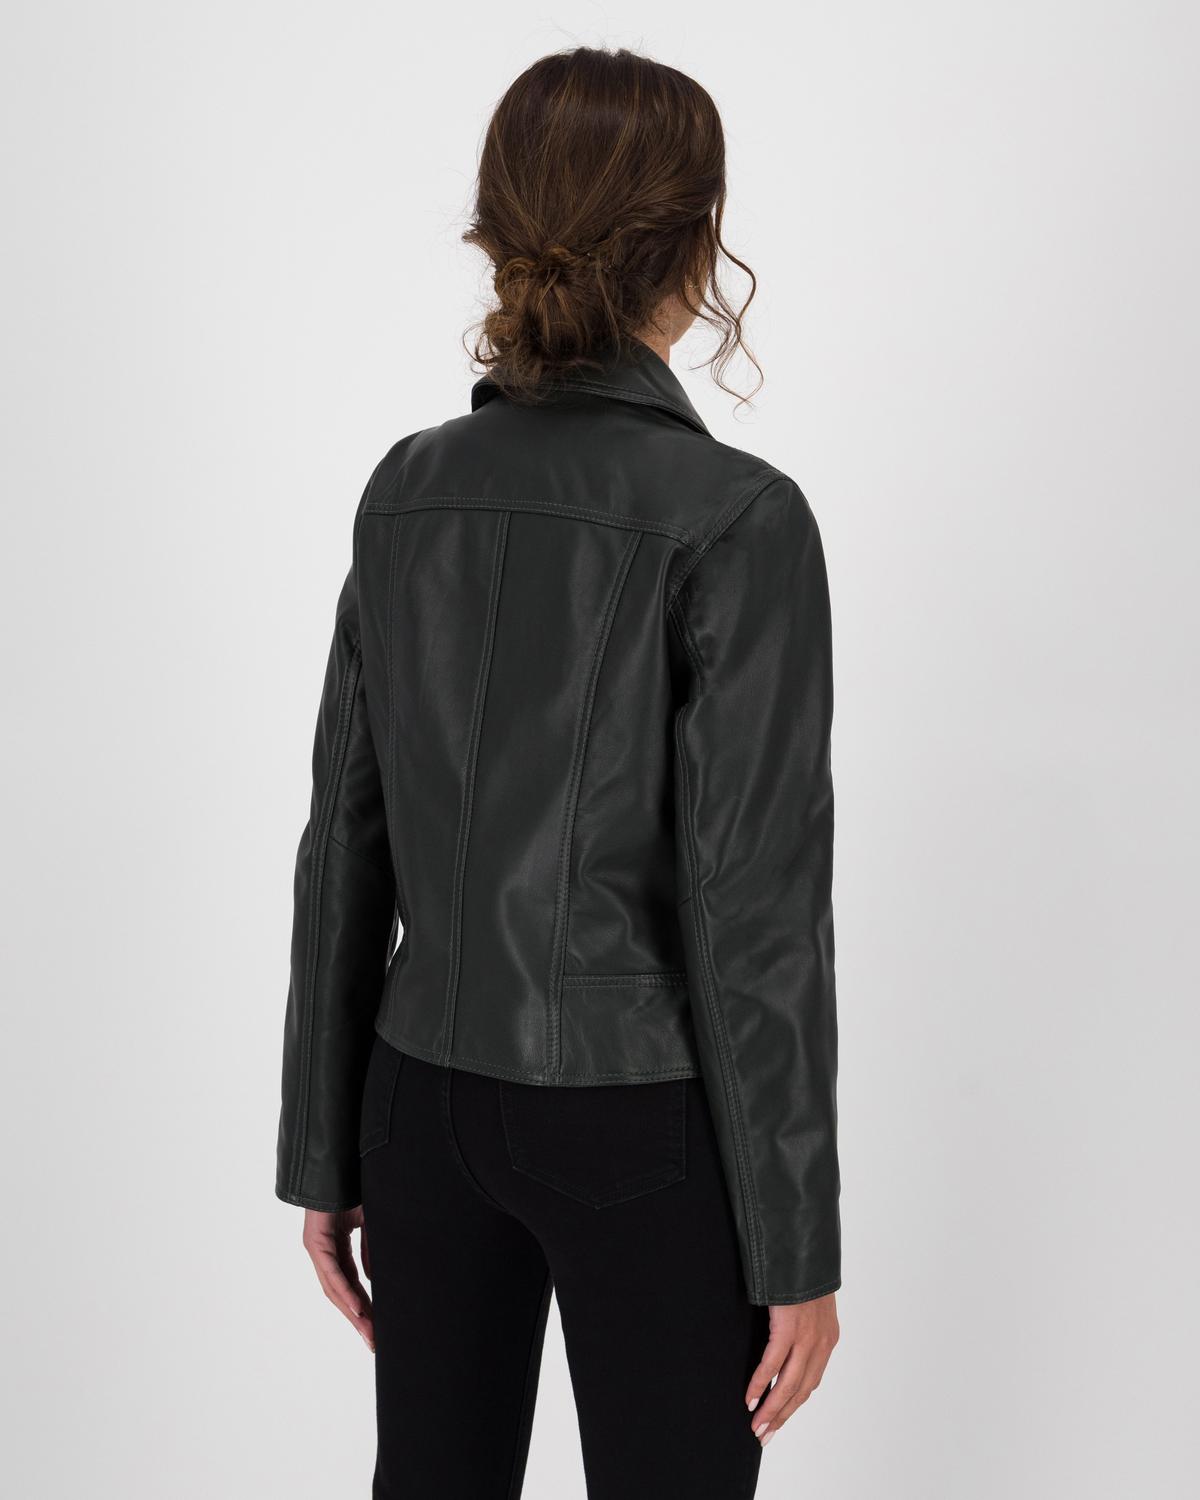 Poetry Noemie Biker Leather Jacket -  Dark Green